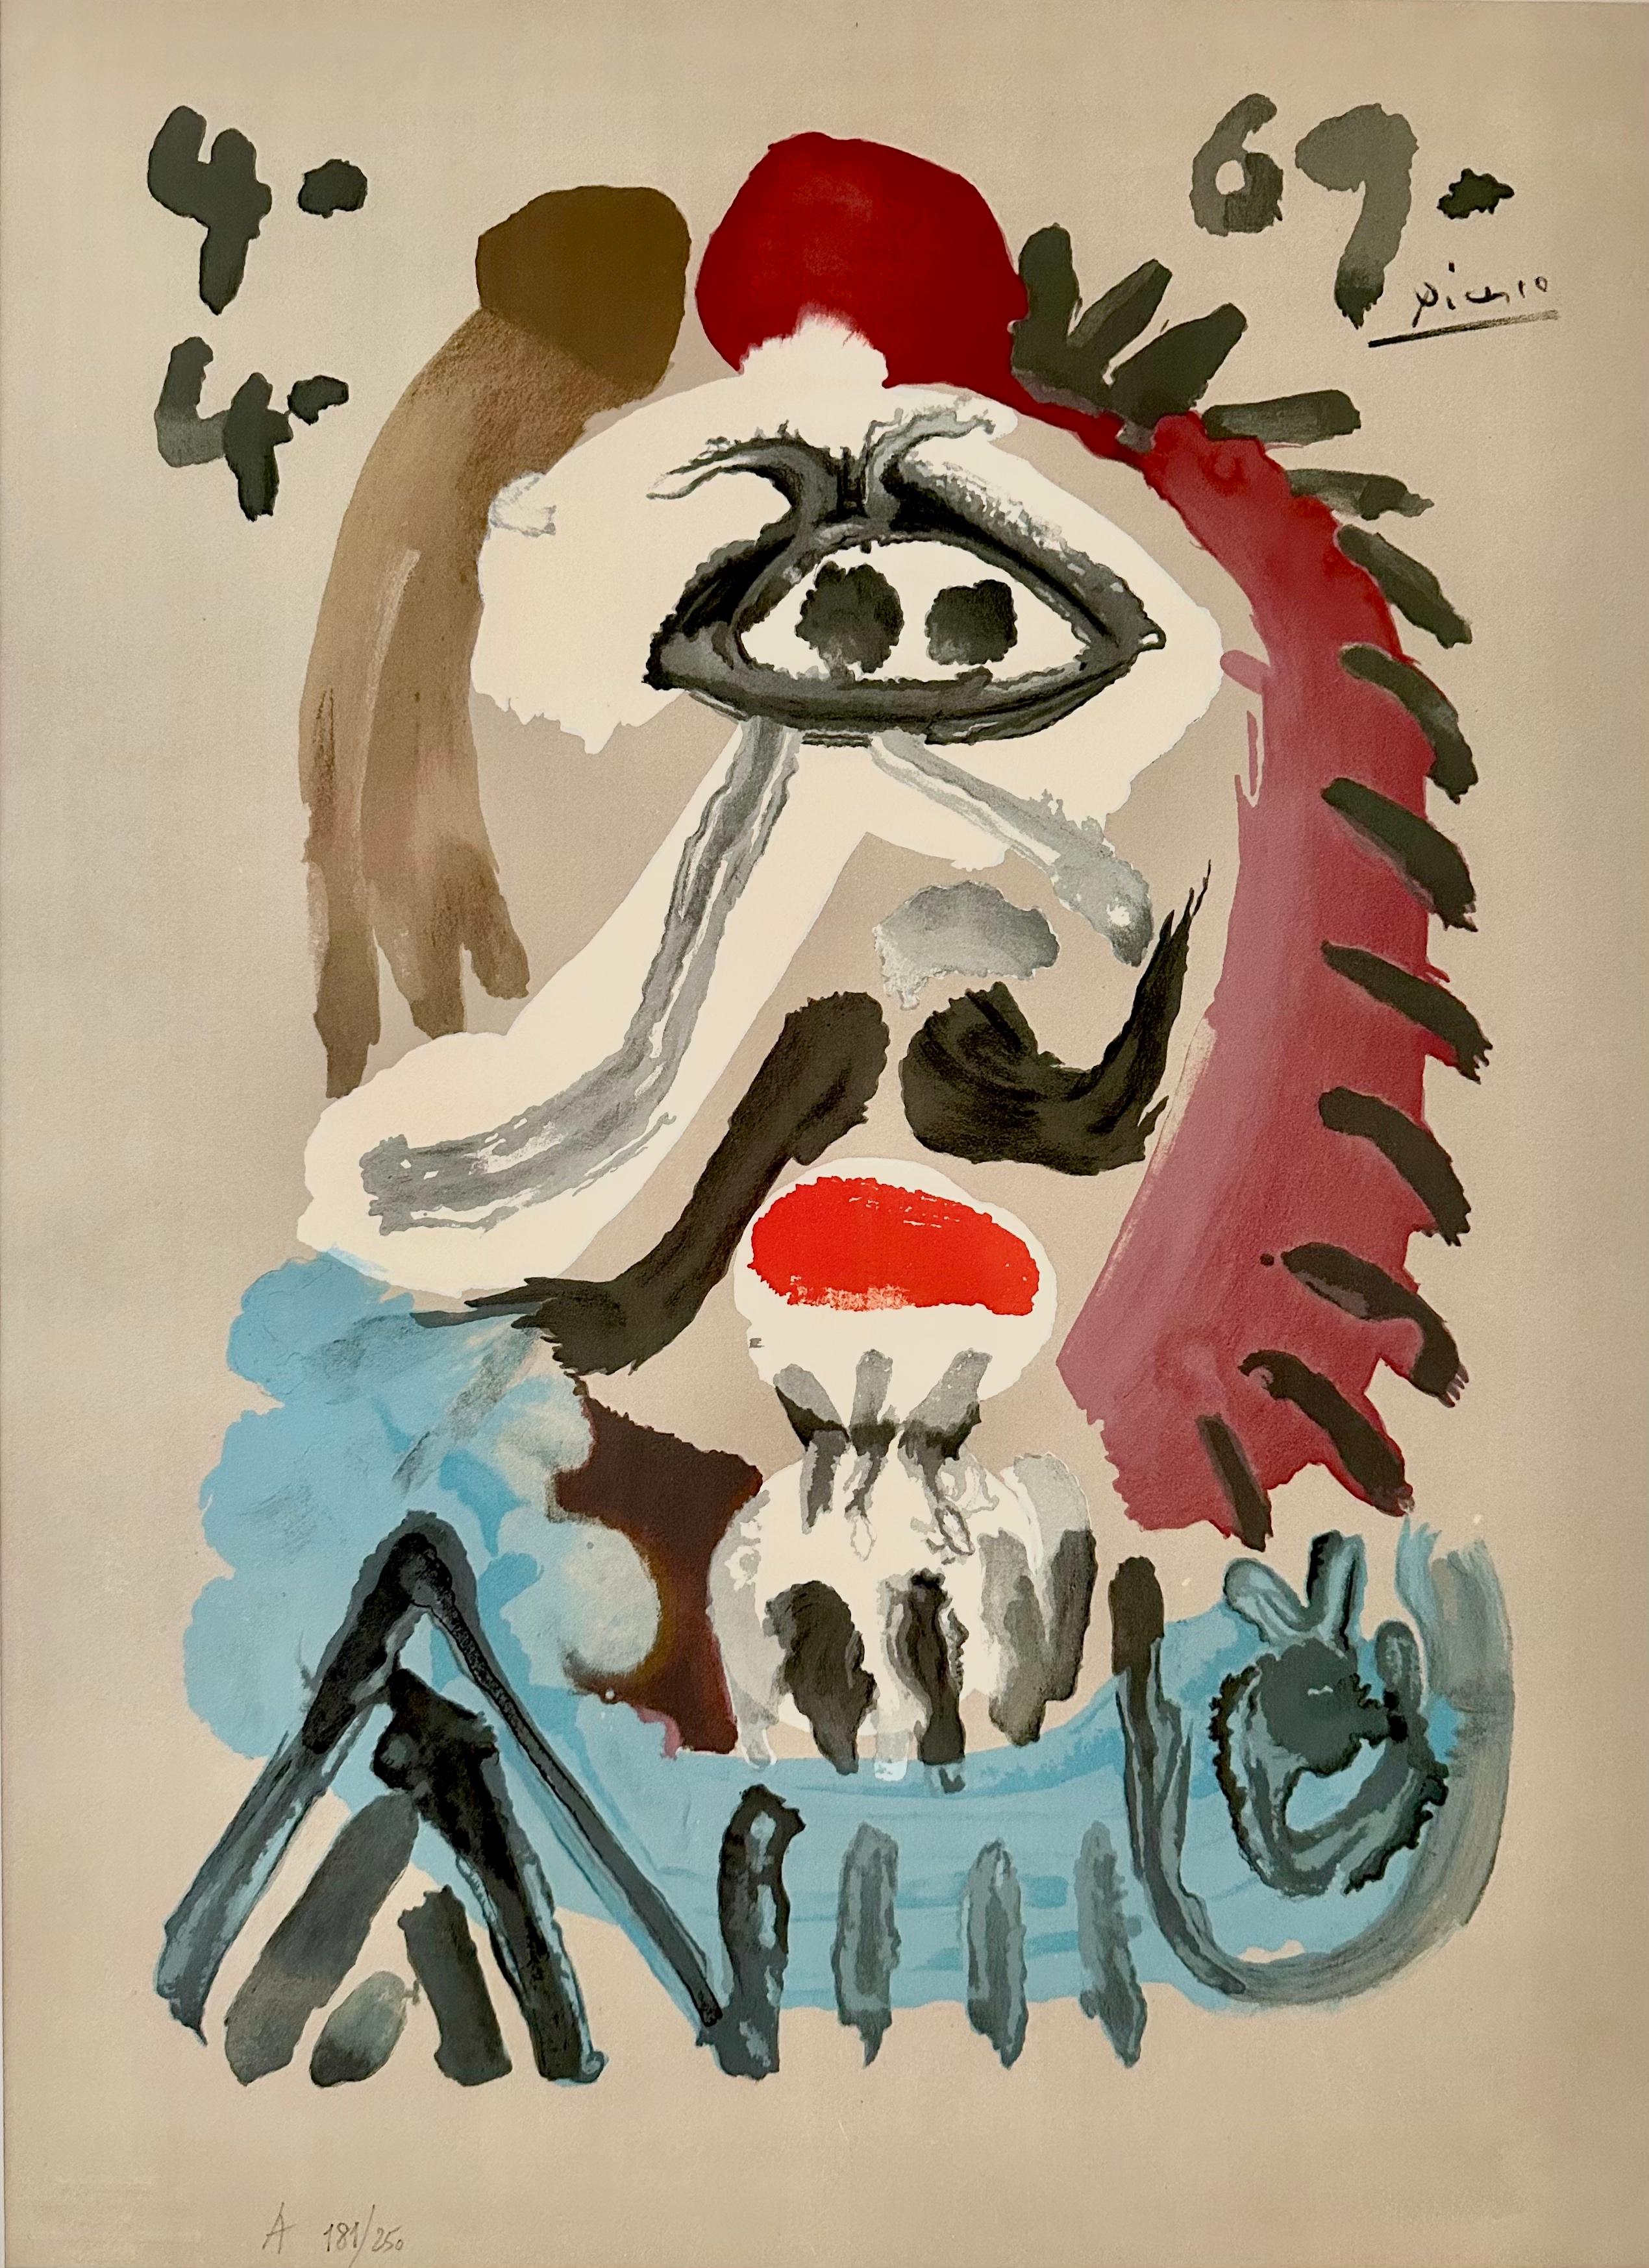 Portrait Print Pablo Picasso - Portraits imaginaires 4.4.69